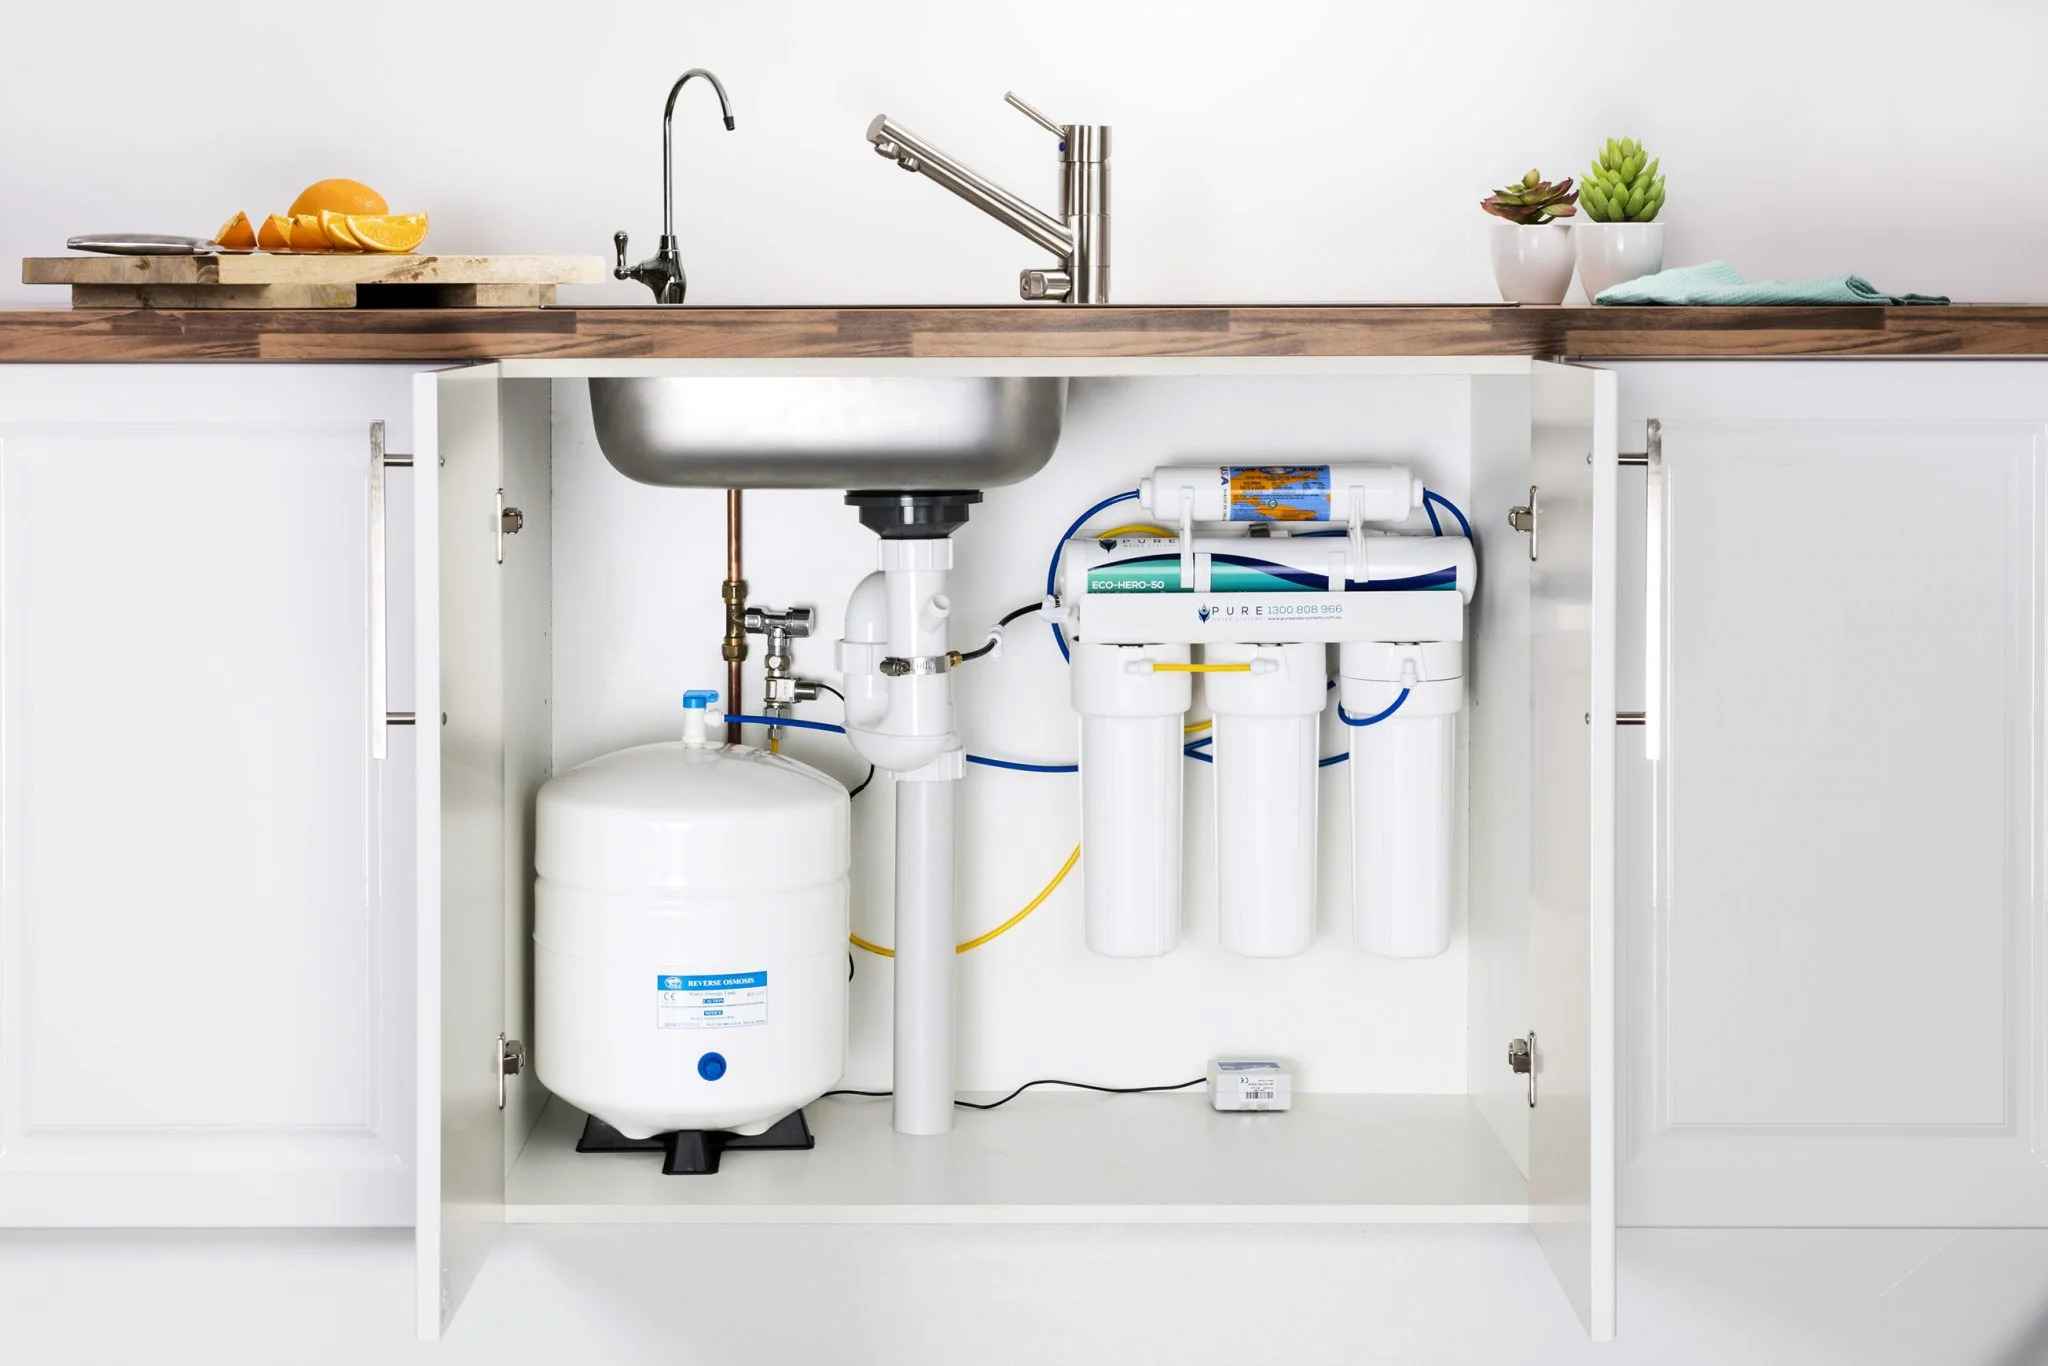 تصویر از دستگاه تصفیه آب خانگی با شیلنگ های نصب شده